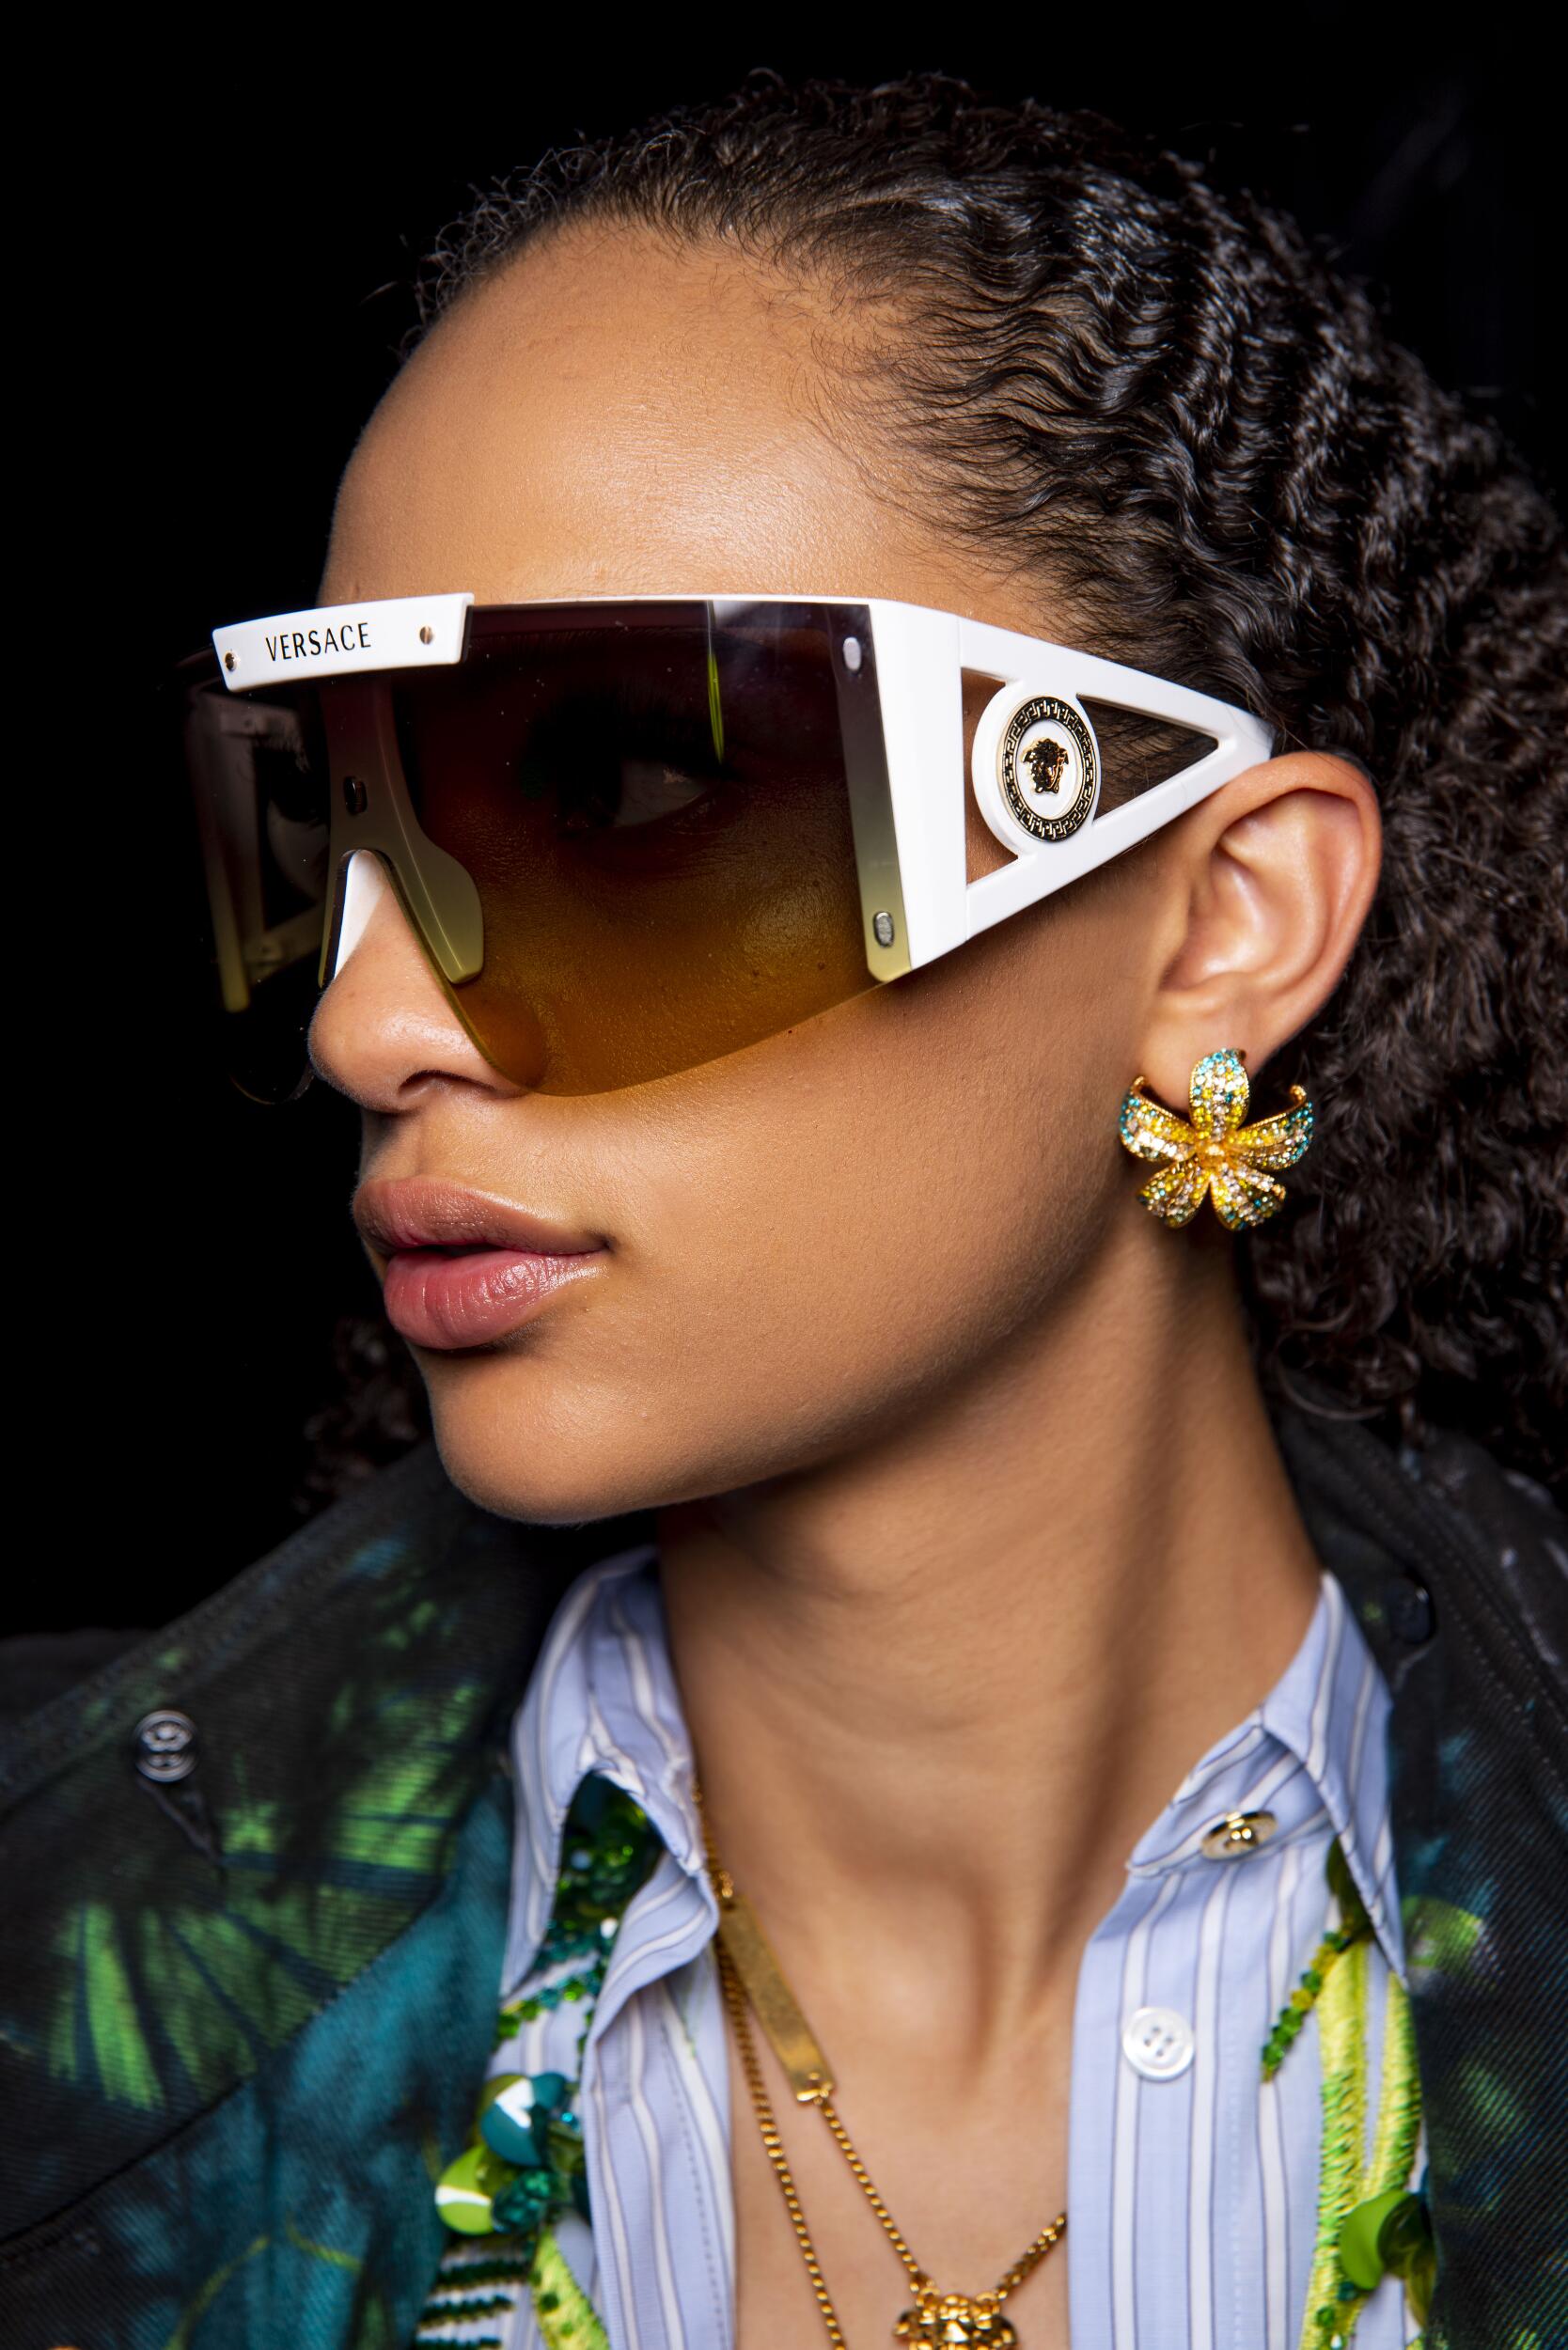 versace womens sunglasses 2019